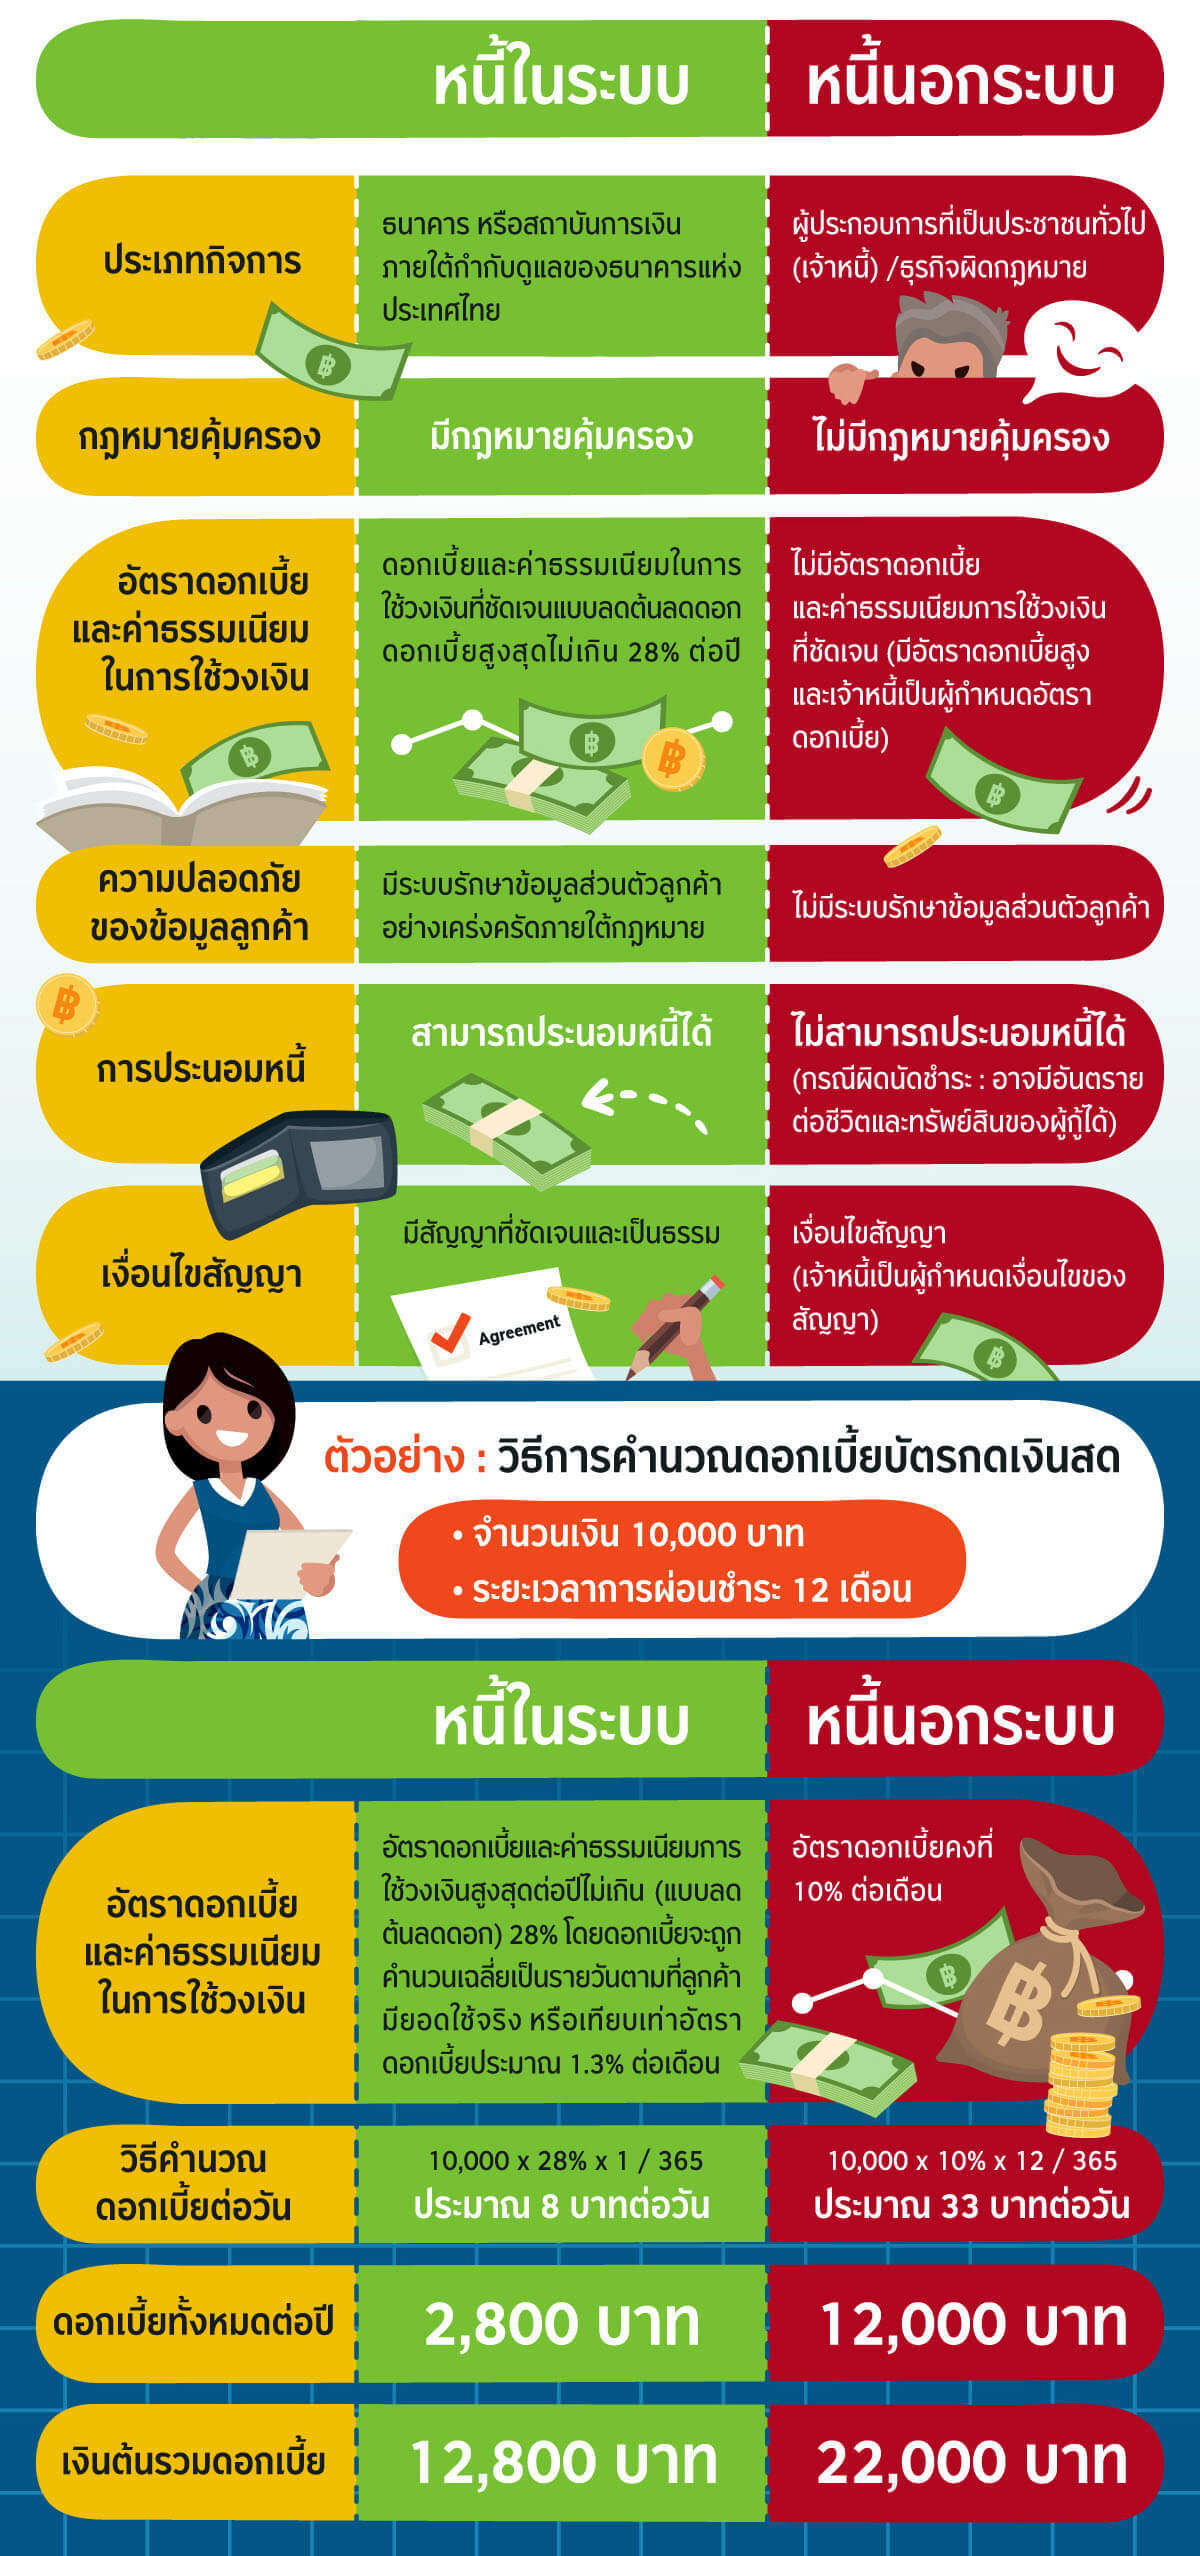 สินเชื่อเงินสด: ความแตกต่างระหว่างหนี้ในระบบกับหนี้นอกระบบ - ธนาคารกสิกรไทย